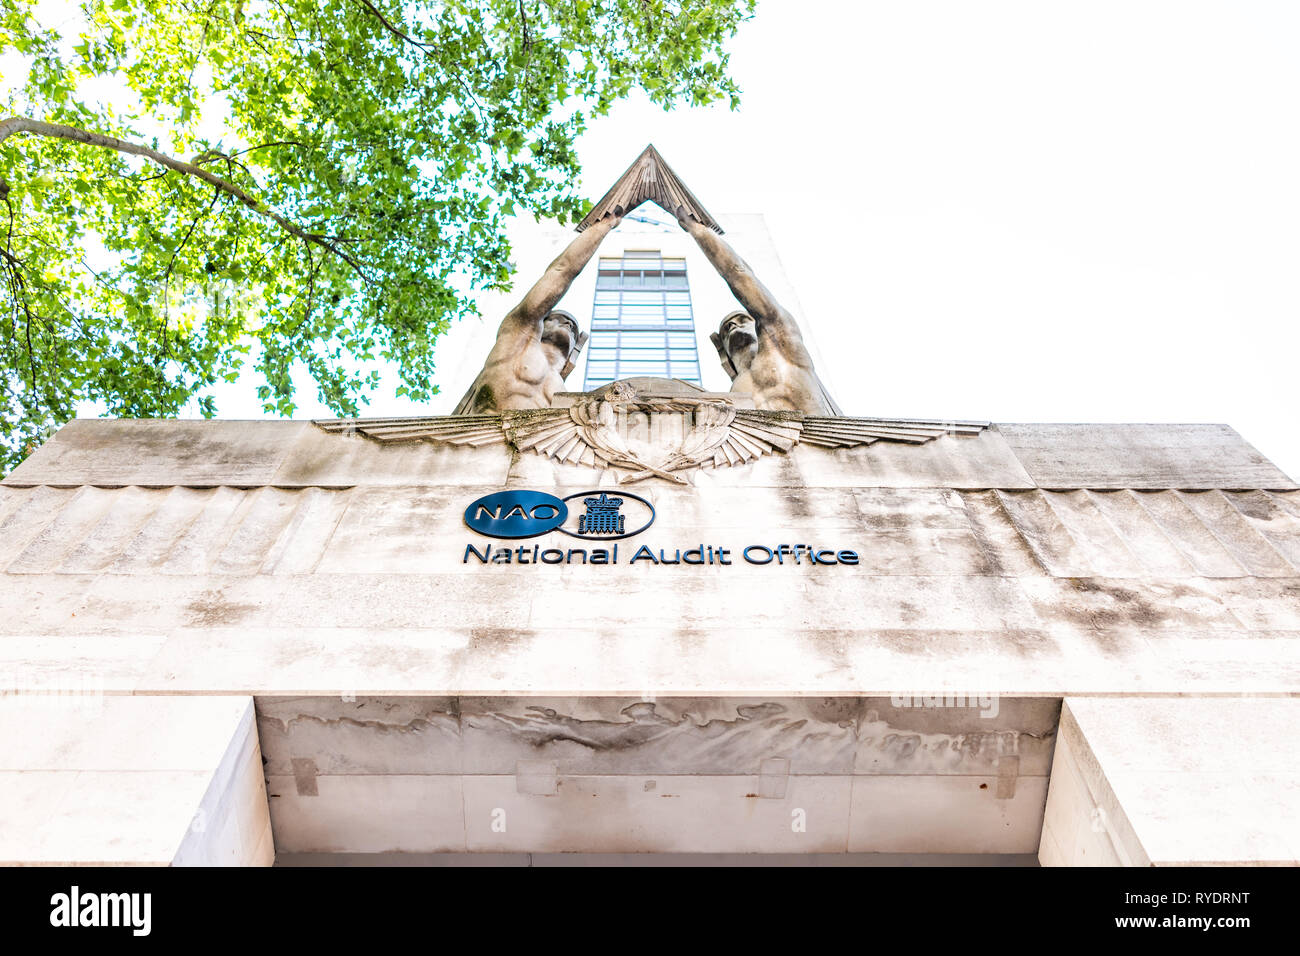 London, Regno Unito - 27 Giugno 2018: il National Audit Office building architettura esterna con segno nel Regno Unito, Pimlico quartiere di quartiere Foto Stock